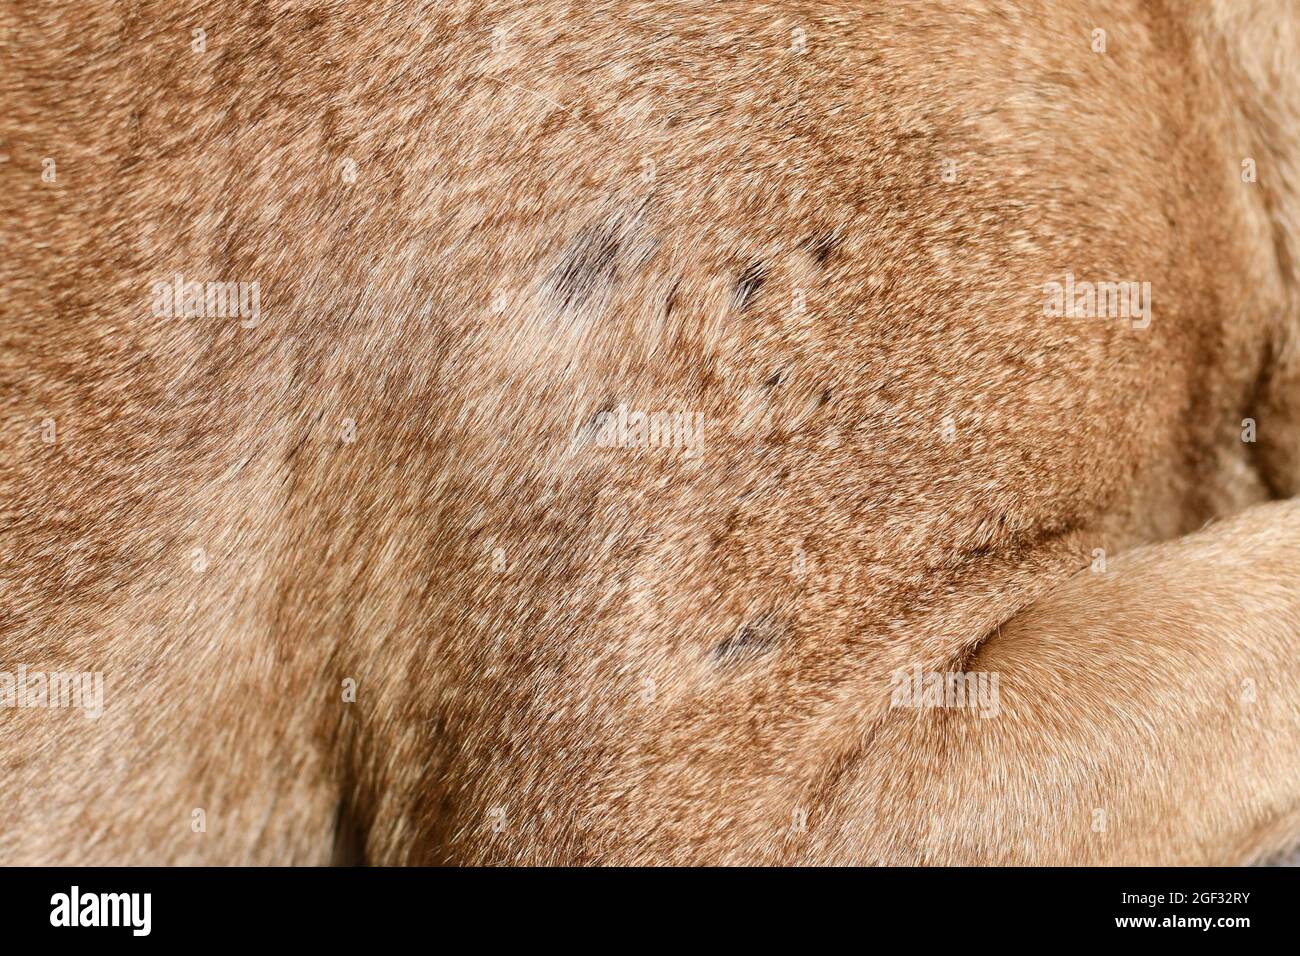 Mehrere kleine kahle Stelle im Fell eines kurzhaarigen Hundes Stockfoto